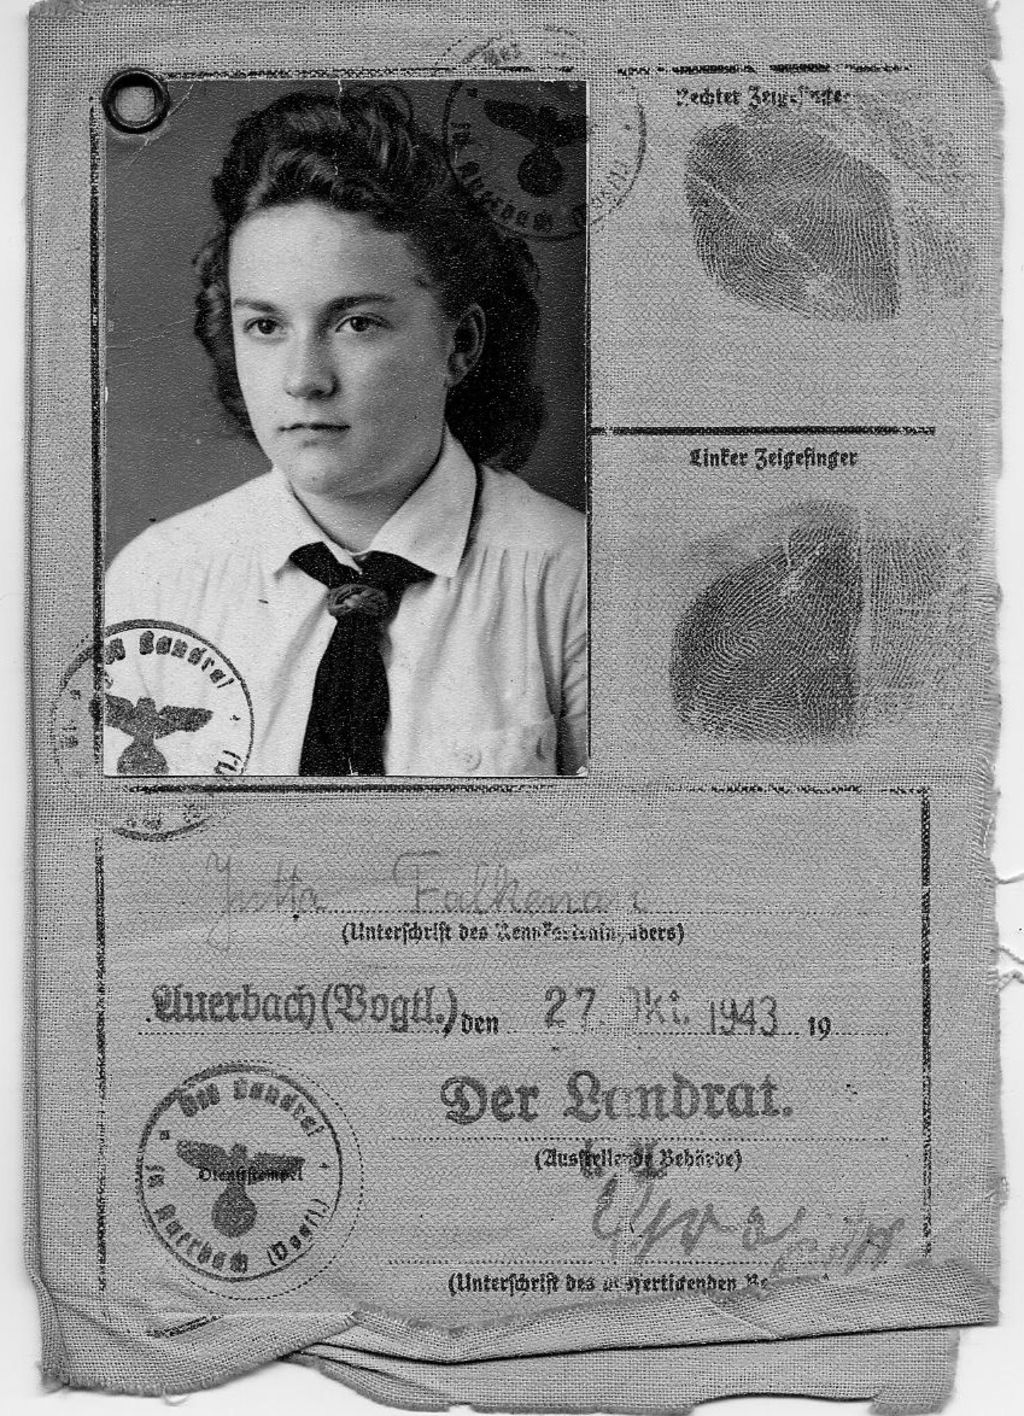 Exponat: Dokument: Ausweis der Hitlerjugend, 1943